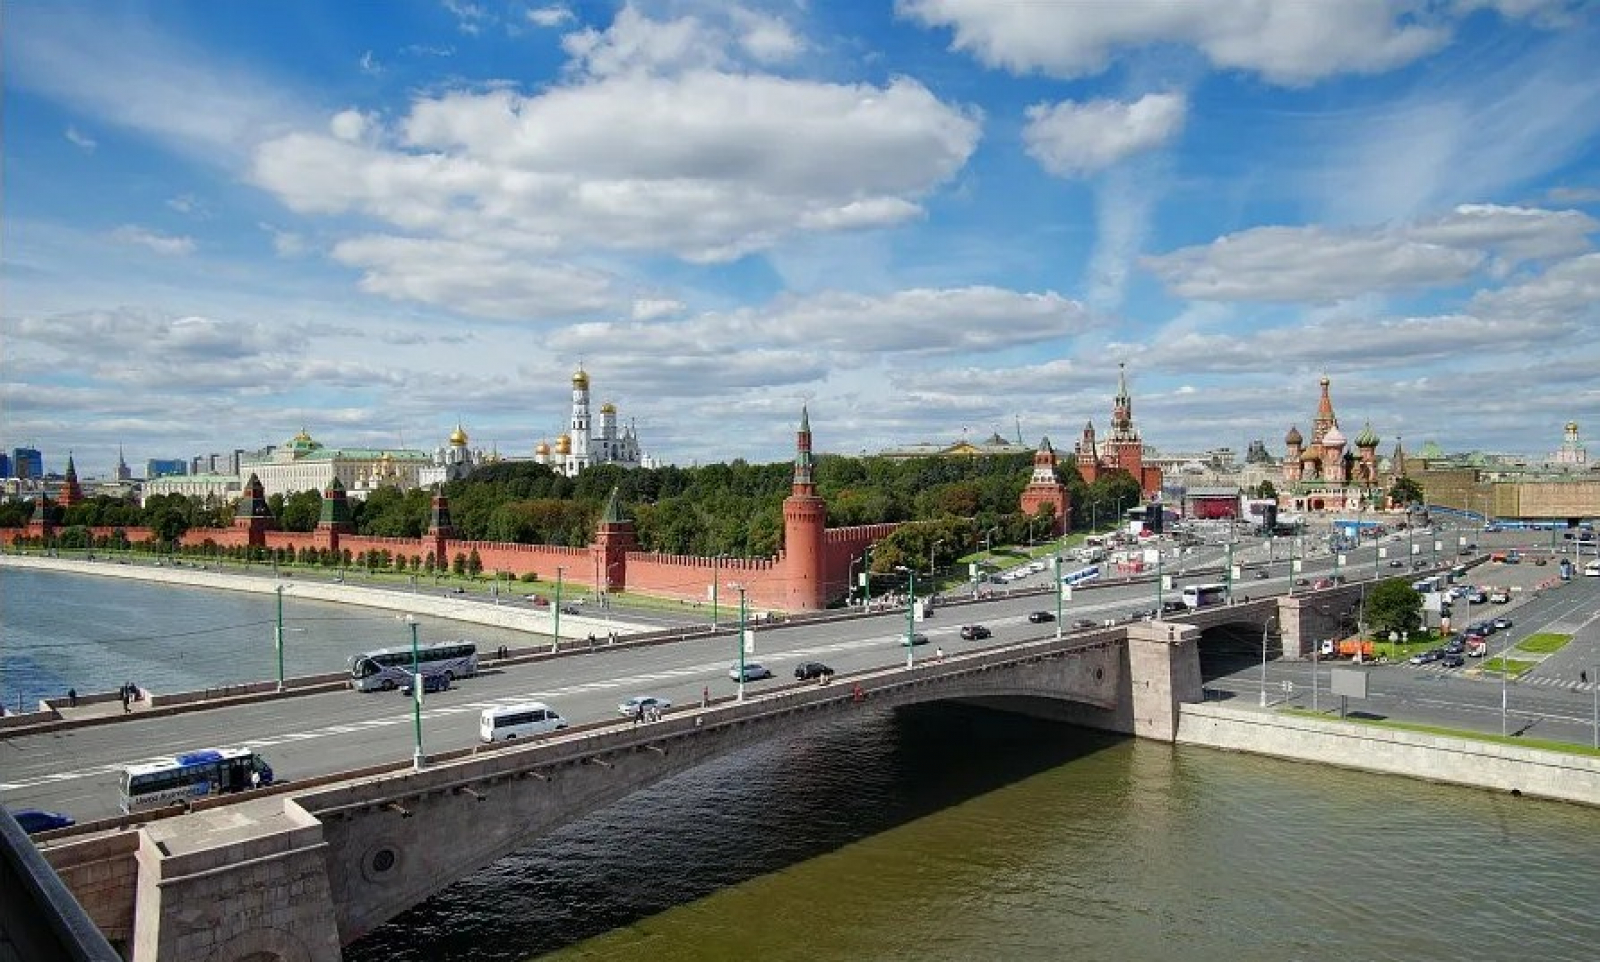 Реки у стен московского кремля